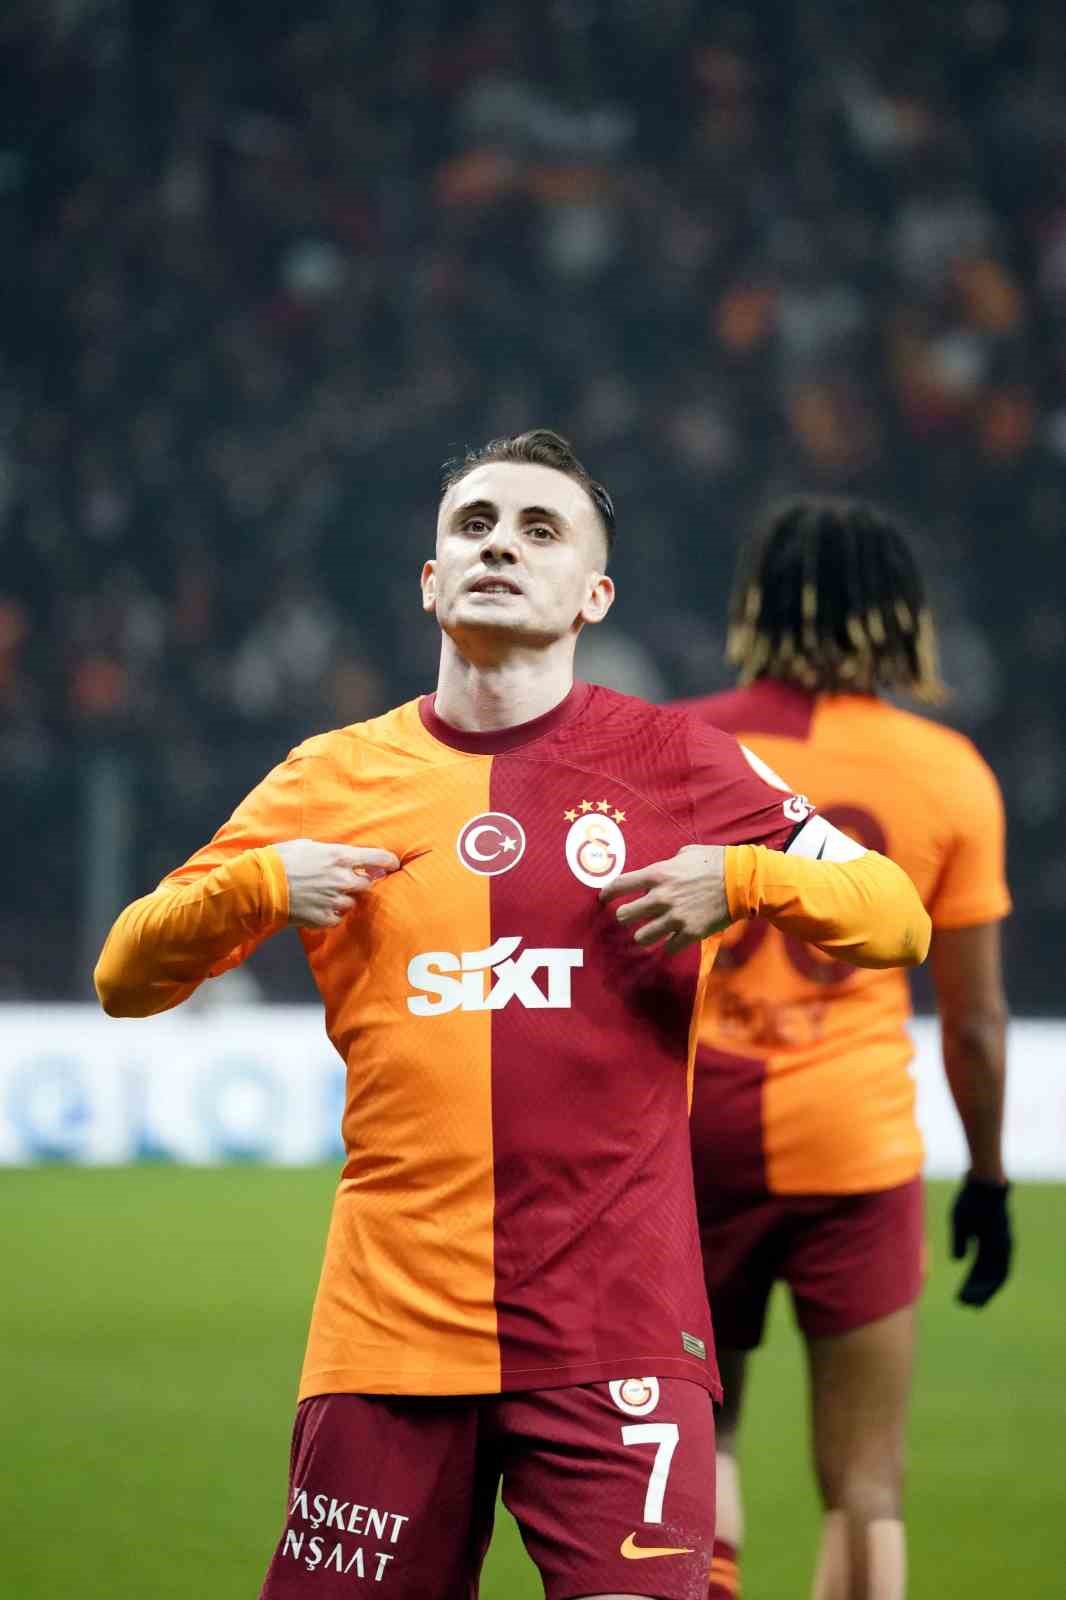 Trendyol Süper Lig: Galatasaray: 1 - Fatih Karagümrük: 0 (İlk yarı)
